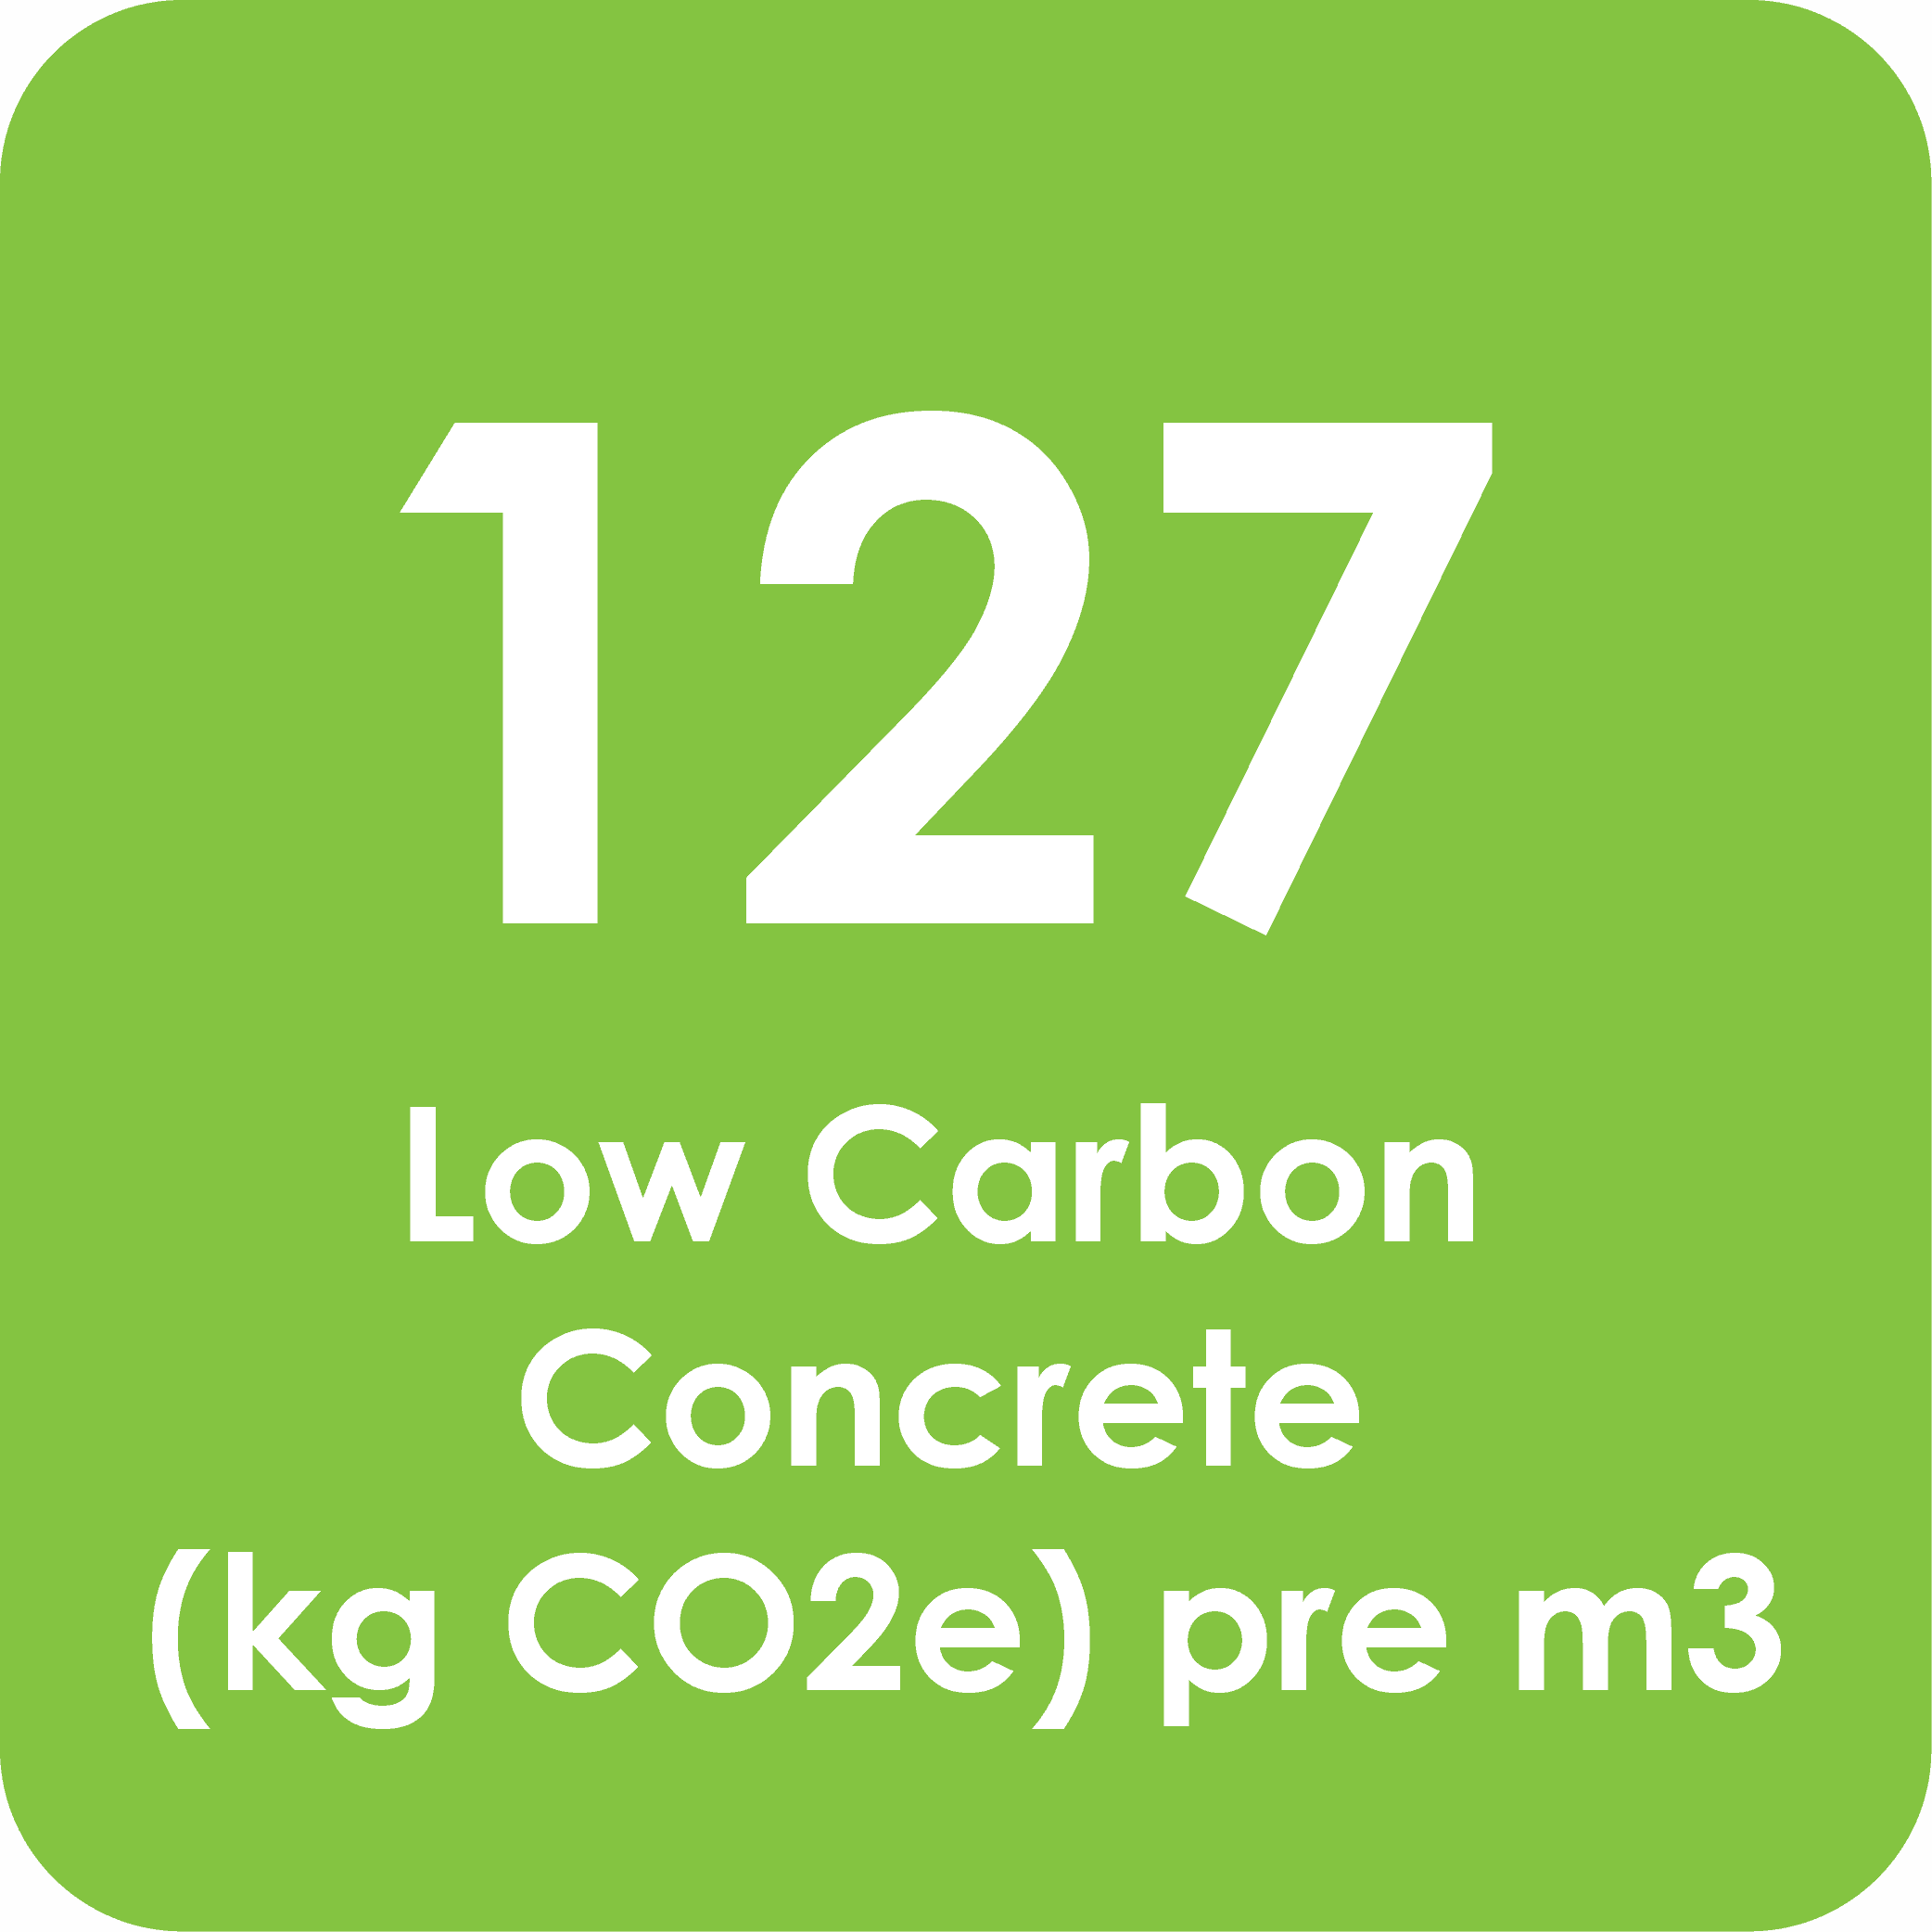 127 low carbon concrete